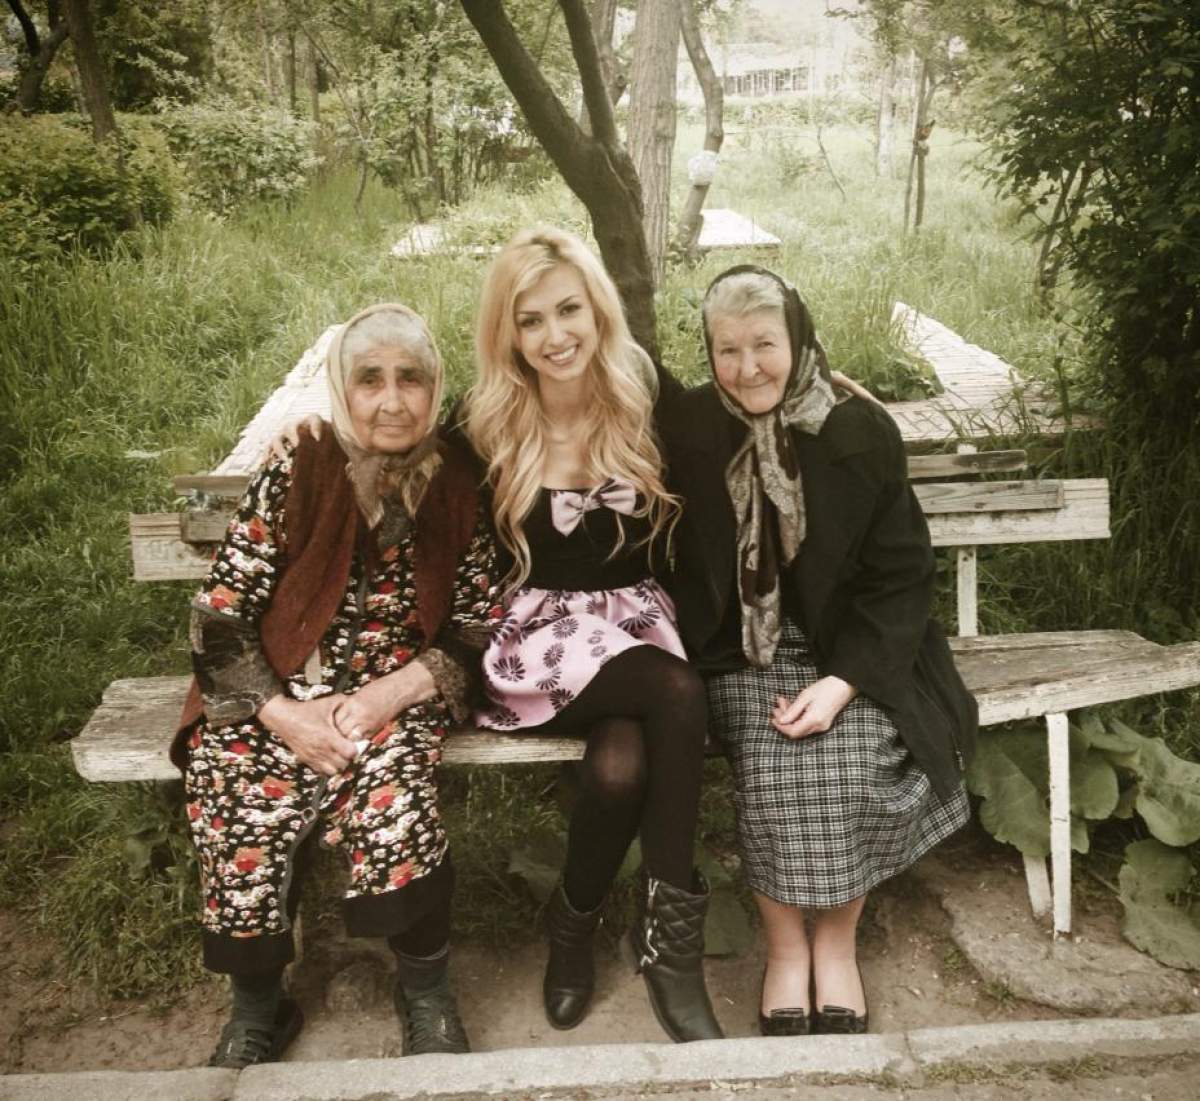 Imagini cutremurătoare cu Andreea Bălan şi bunica acesteia care e pe moarte: "Cum să mă împac cu gândul că..."